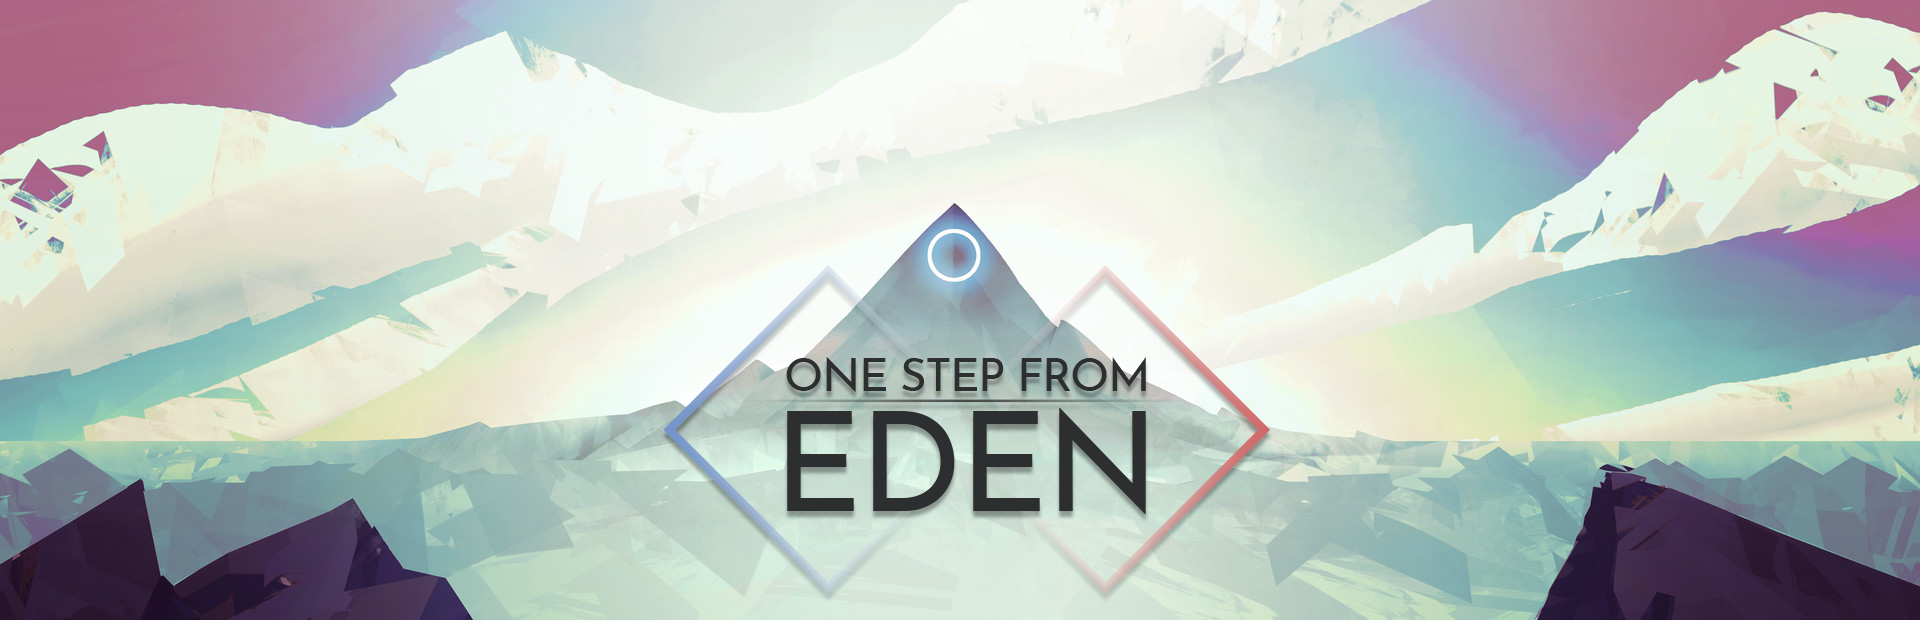 دانلود بازی One Step From Eden برای کامپیوتر | گیمباتو